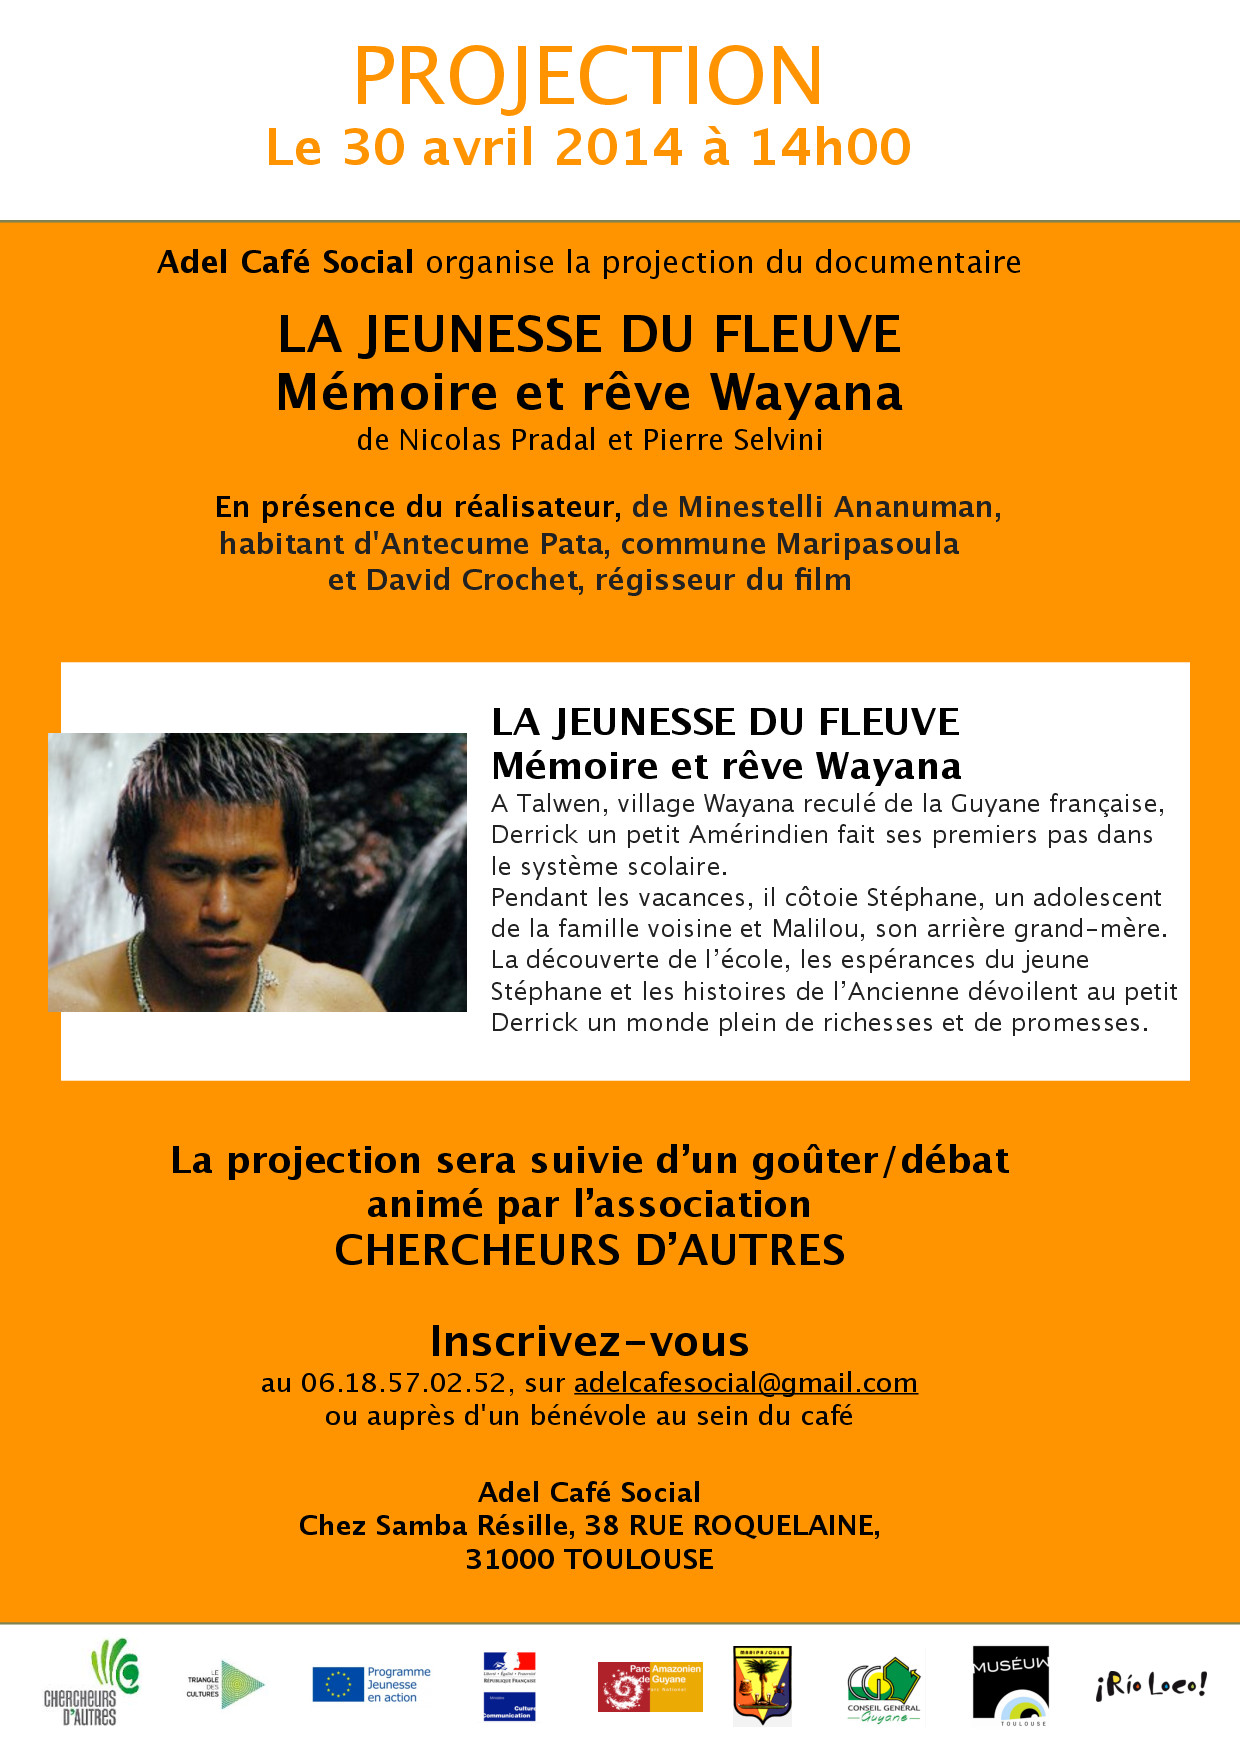 Projection “La jeunesse du Fleuve” à Adel Café Social 30 avril 14h